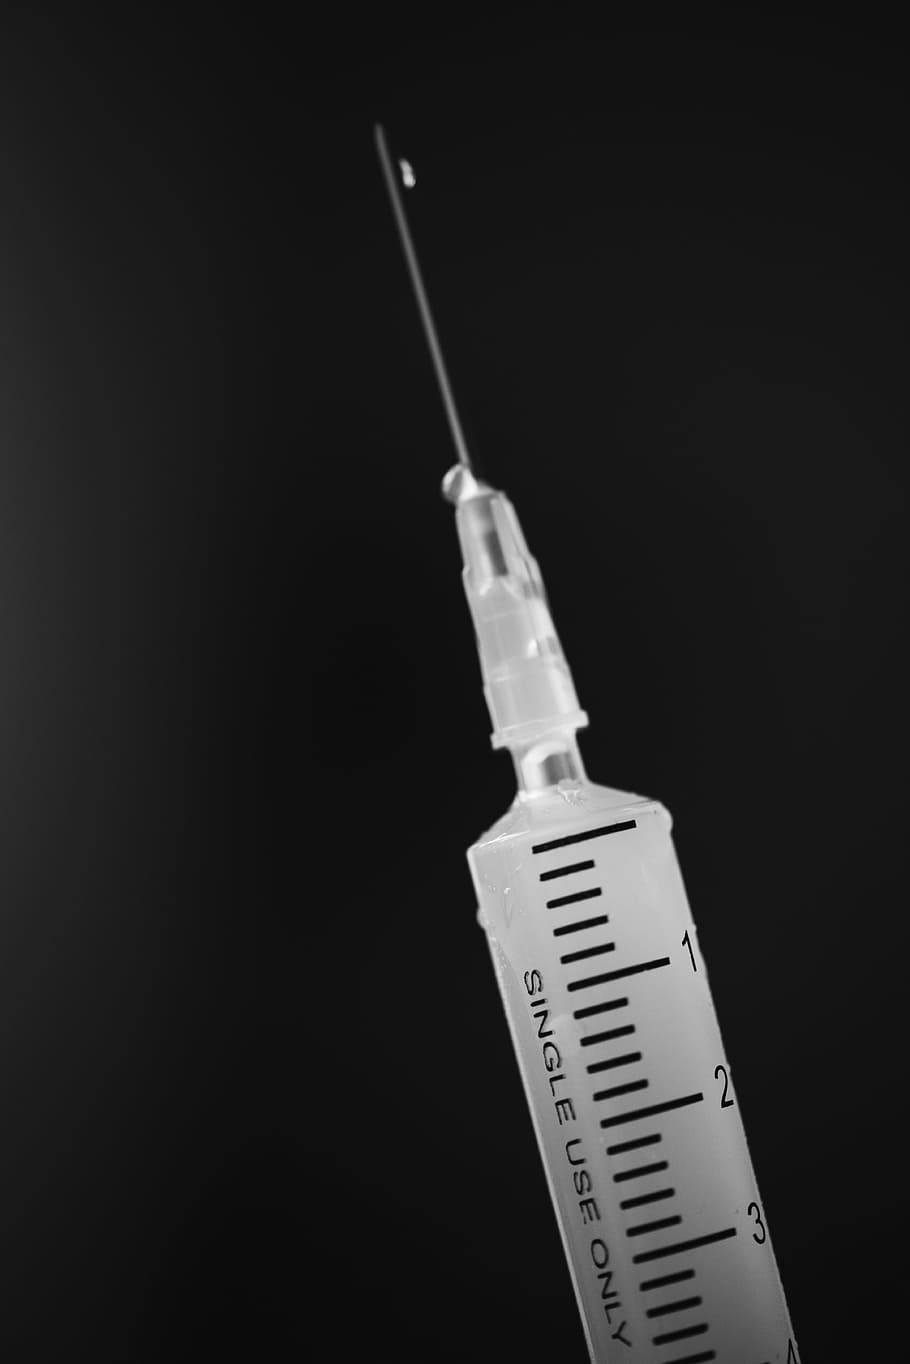 Close-Up of White Syringe, antibiotic, black and white, bw, chemical